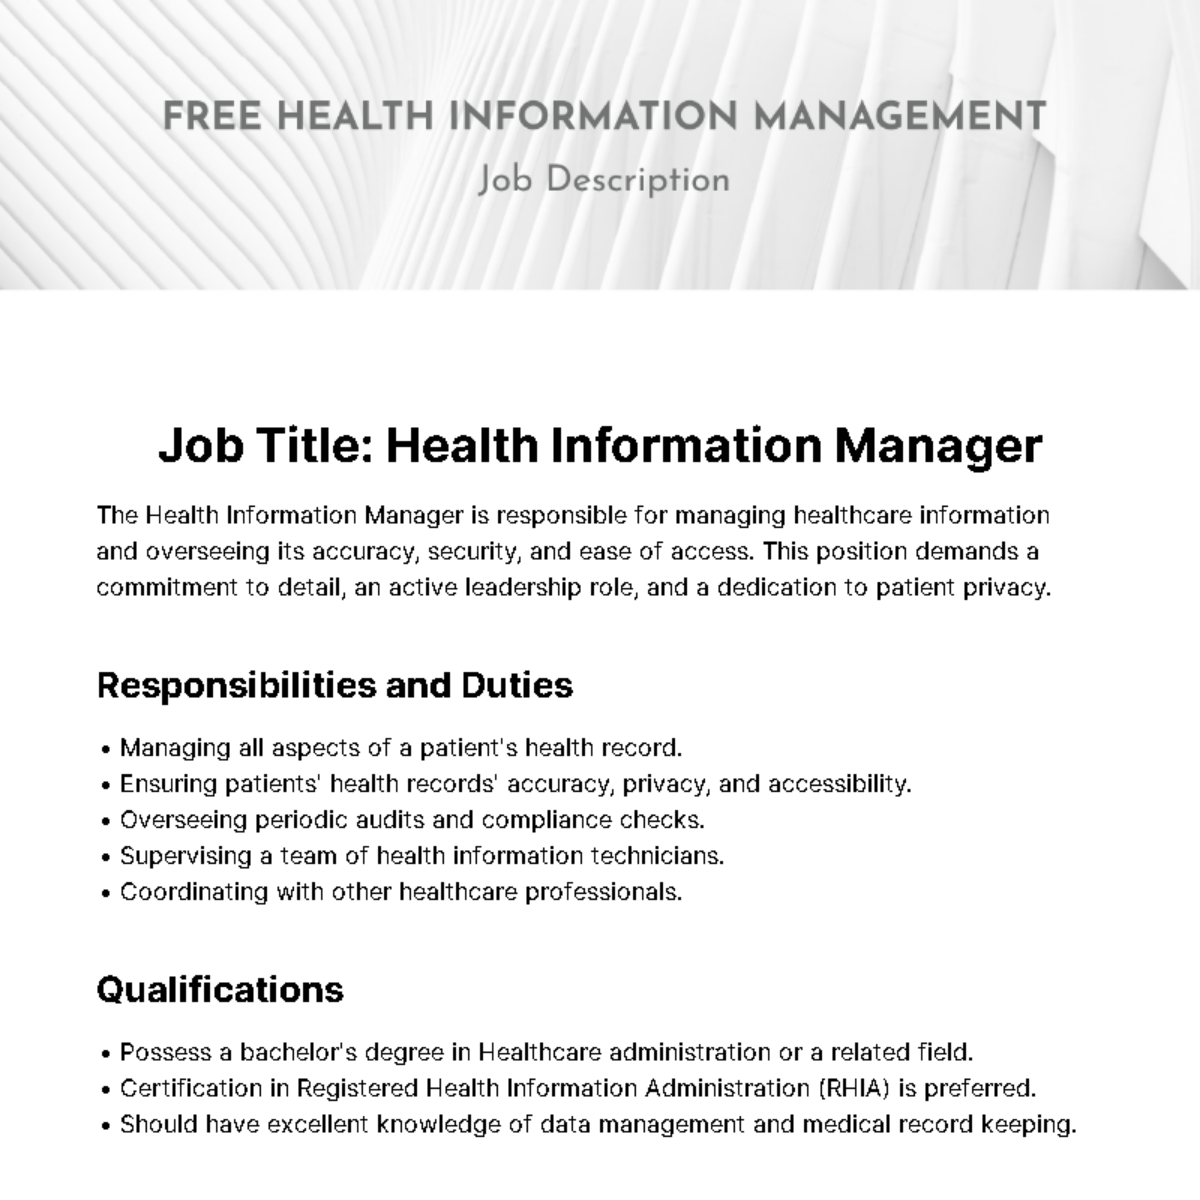 Health Information Management Job Description Template